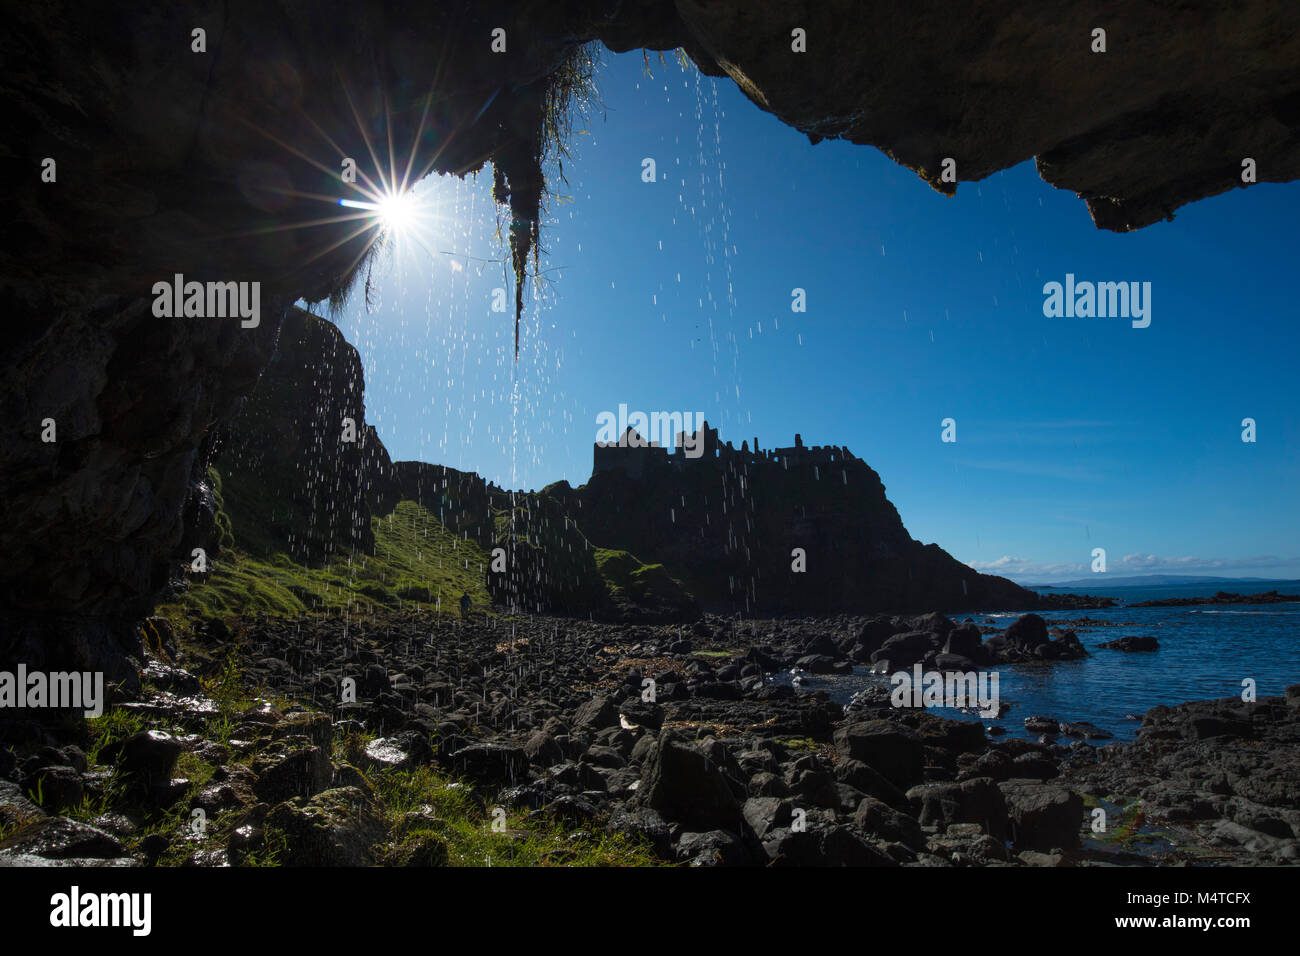 Silhouette di Dunluce Castle dall'interno di una grotta marina, Causeway Coast, County Antrim, Irlanda del Nord. Foto Stock